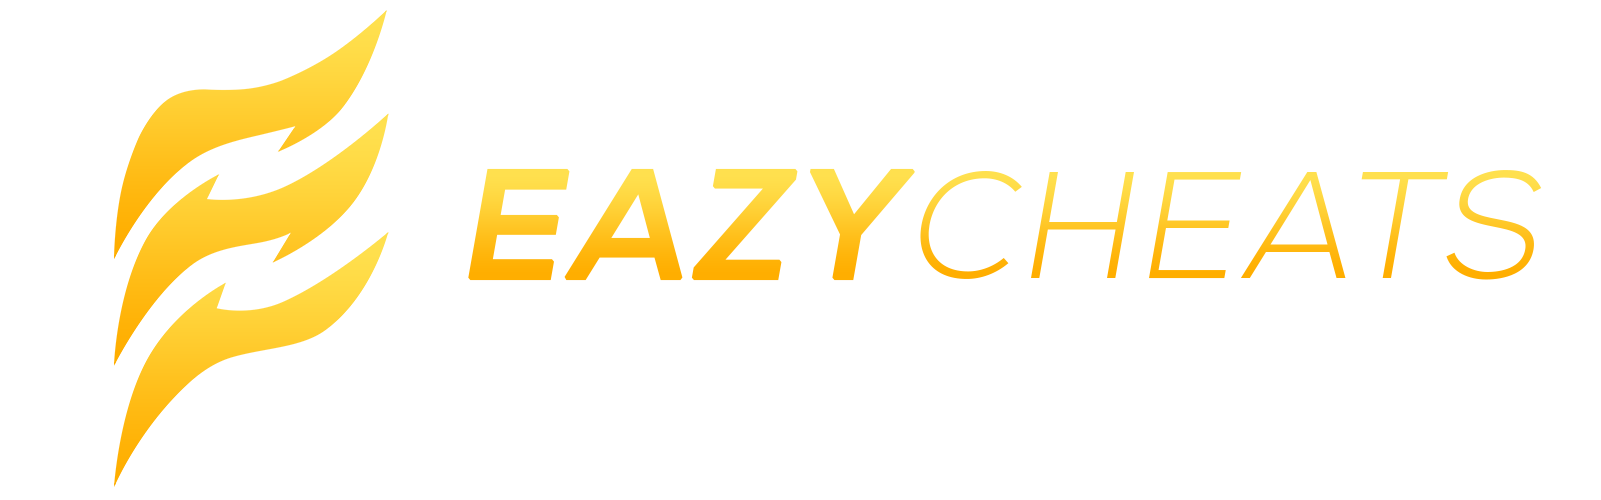 Eazycheats.net - Free CS2 Cheats & Marketplace